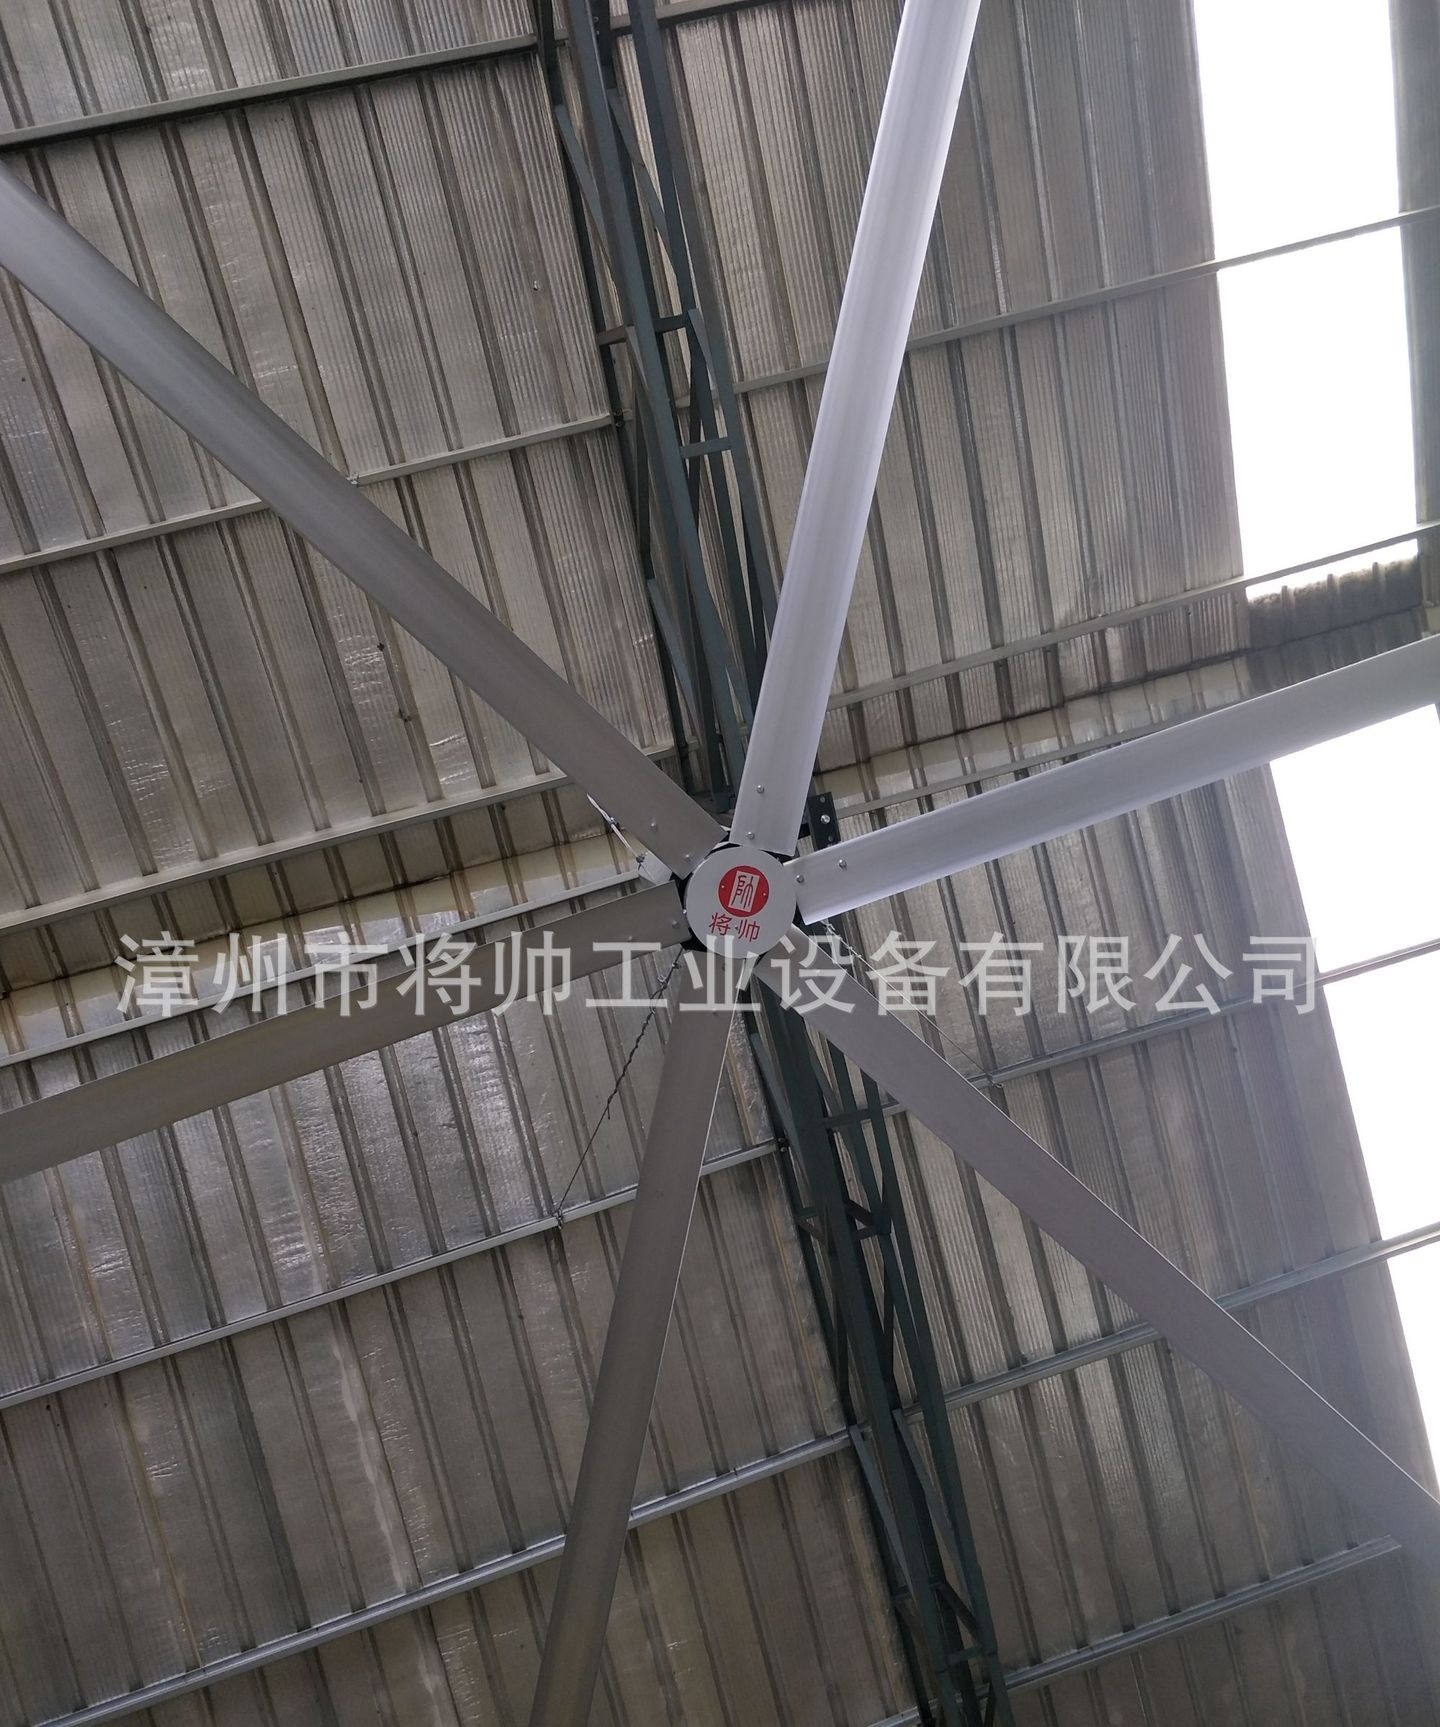 工业风扇、大型节能风扇、风扇、工业大风扇、吊扇、厂房通风设备